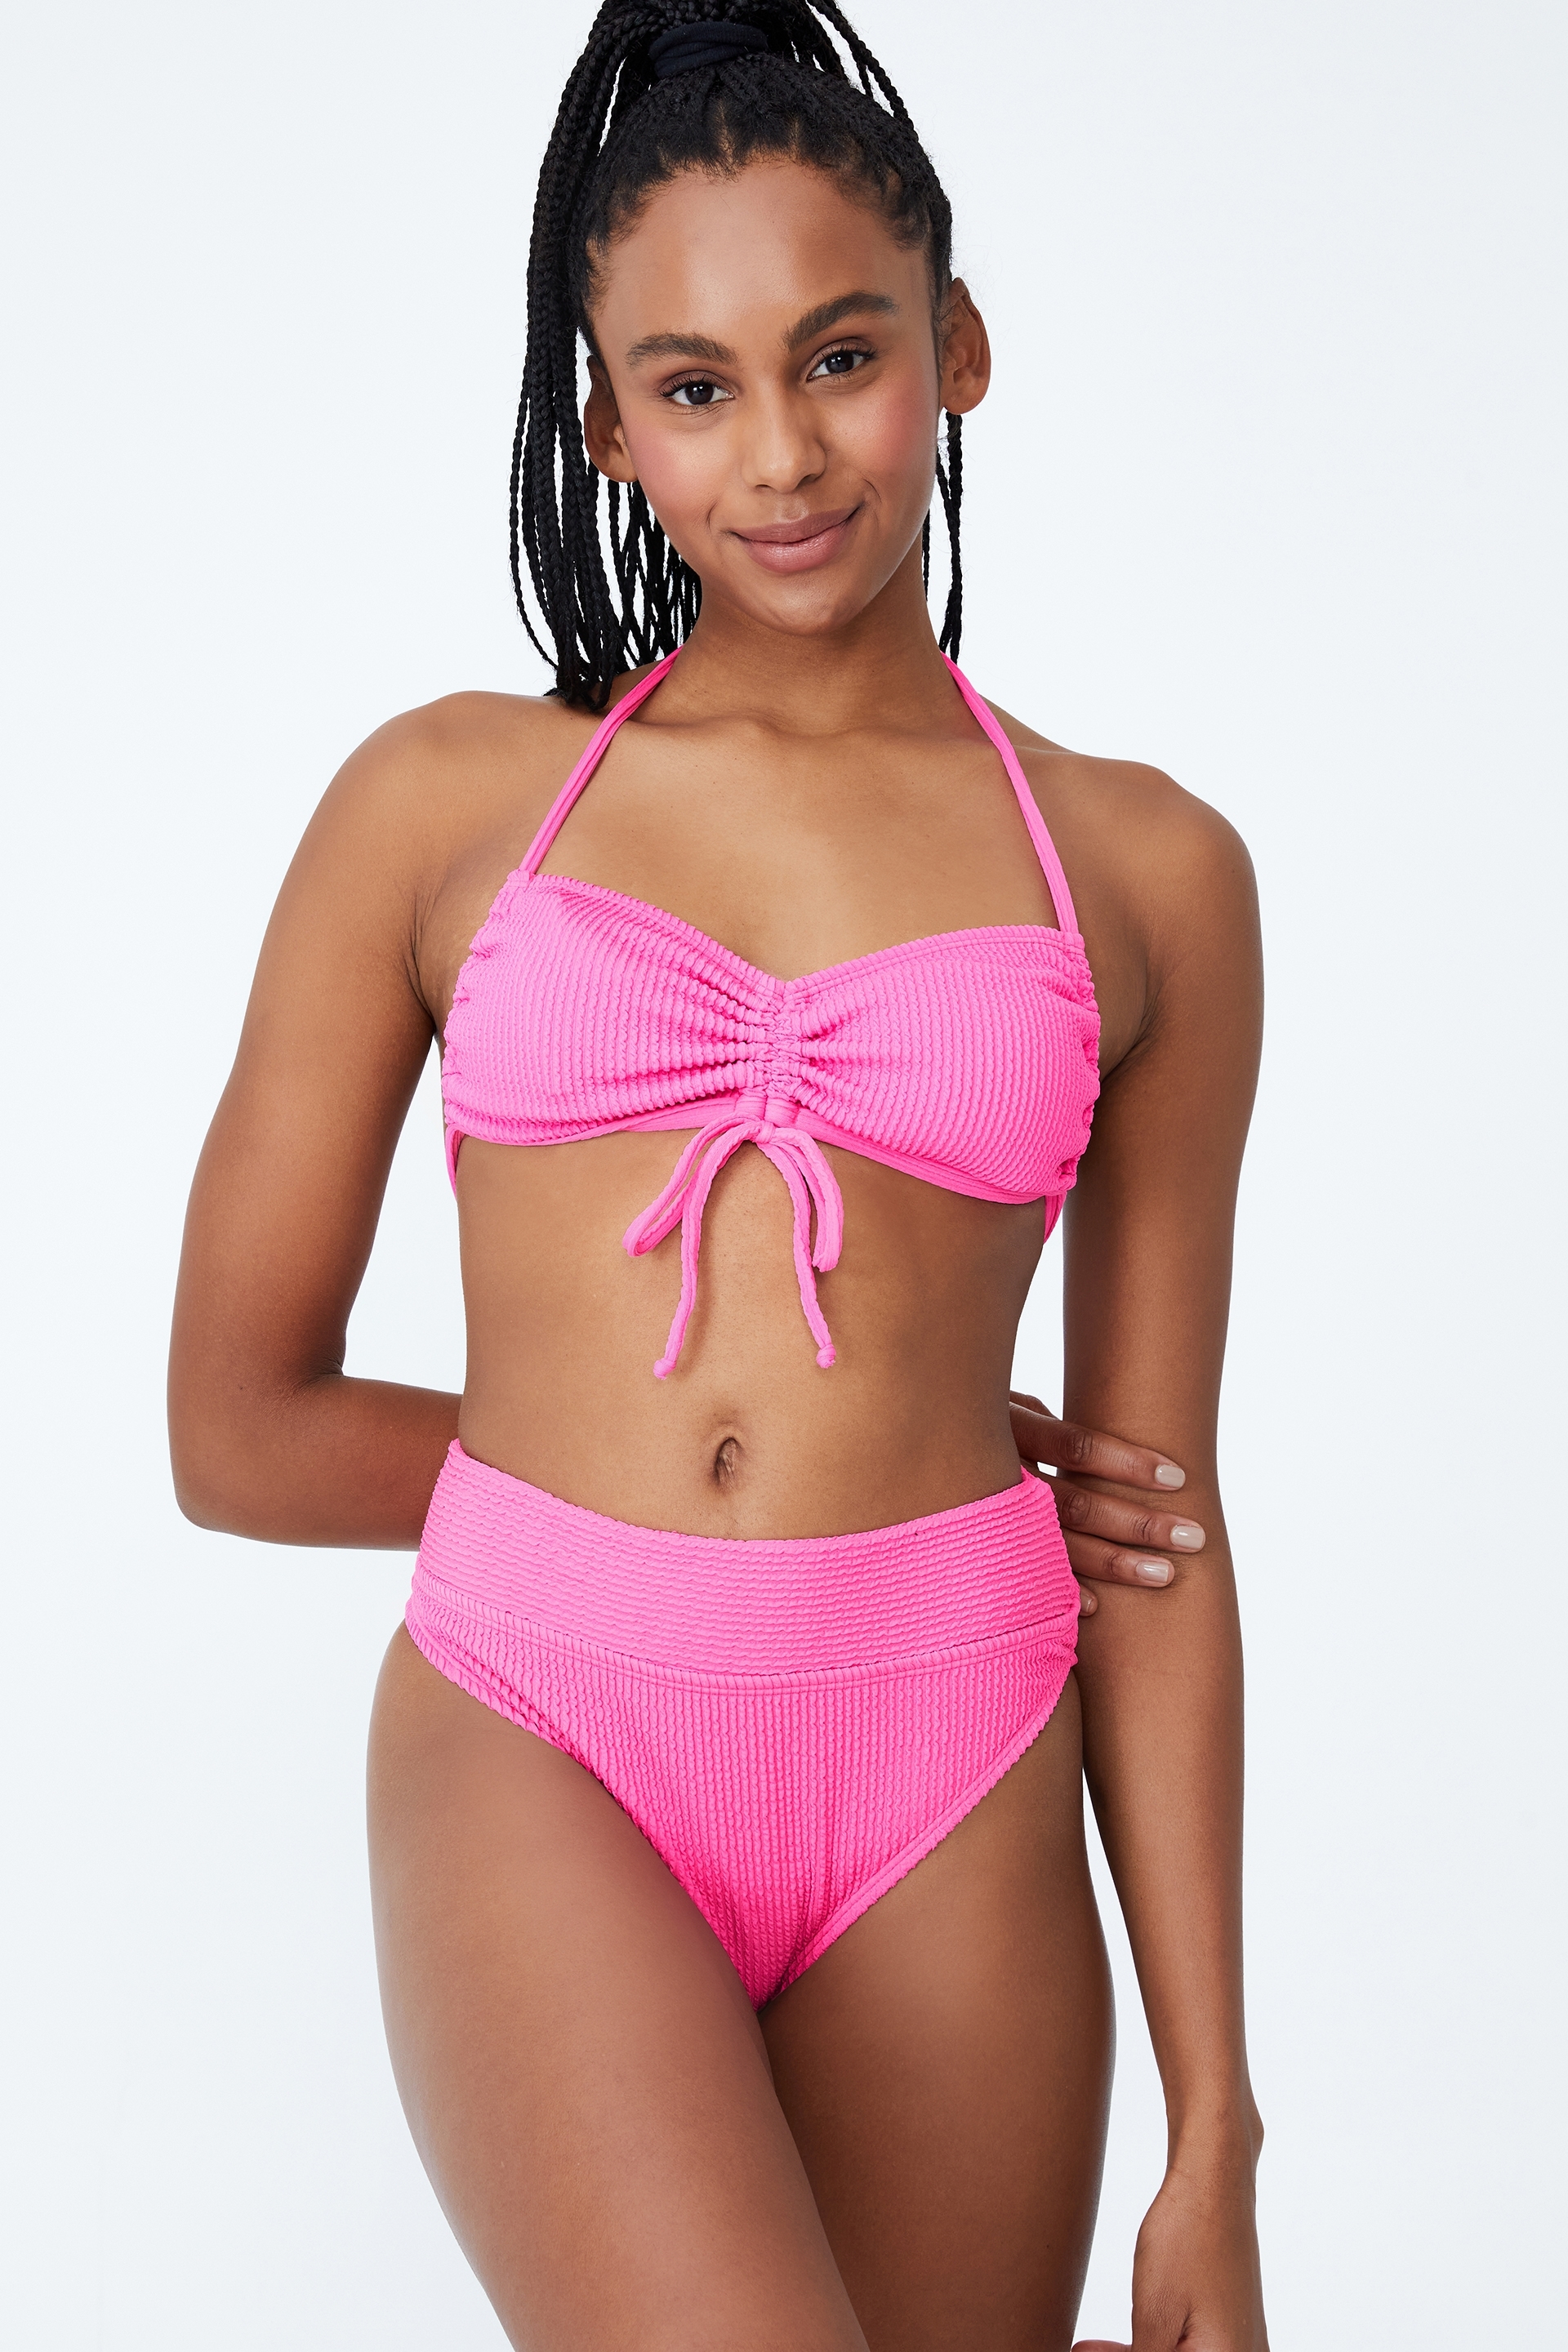 Body - Highwaisted Cheeky Bikini Bottom - Aurora pink crinkle